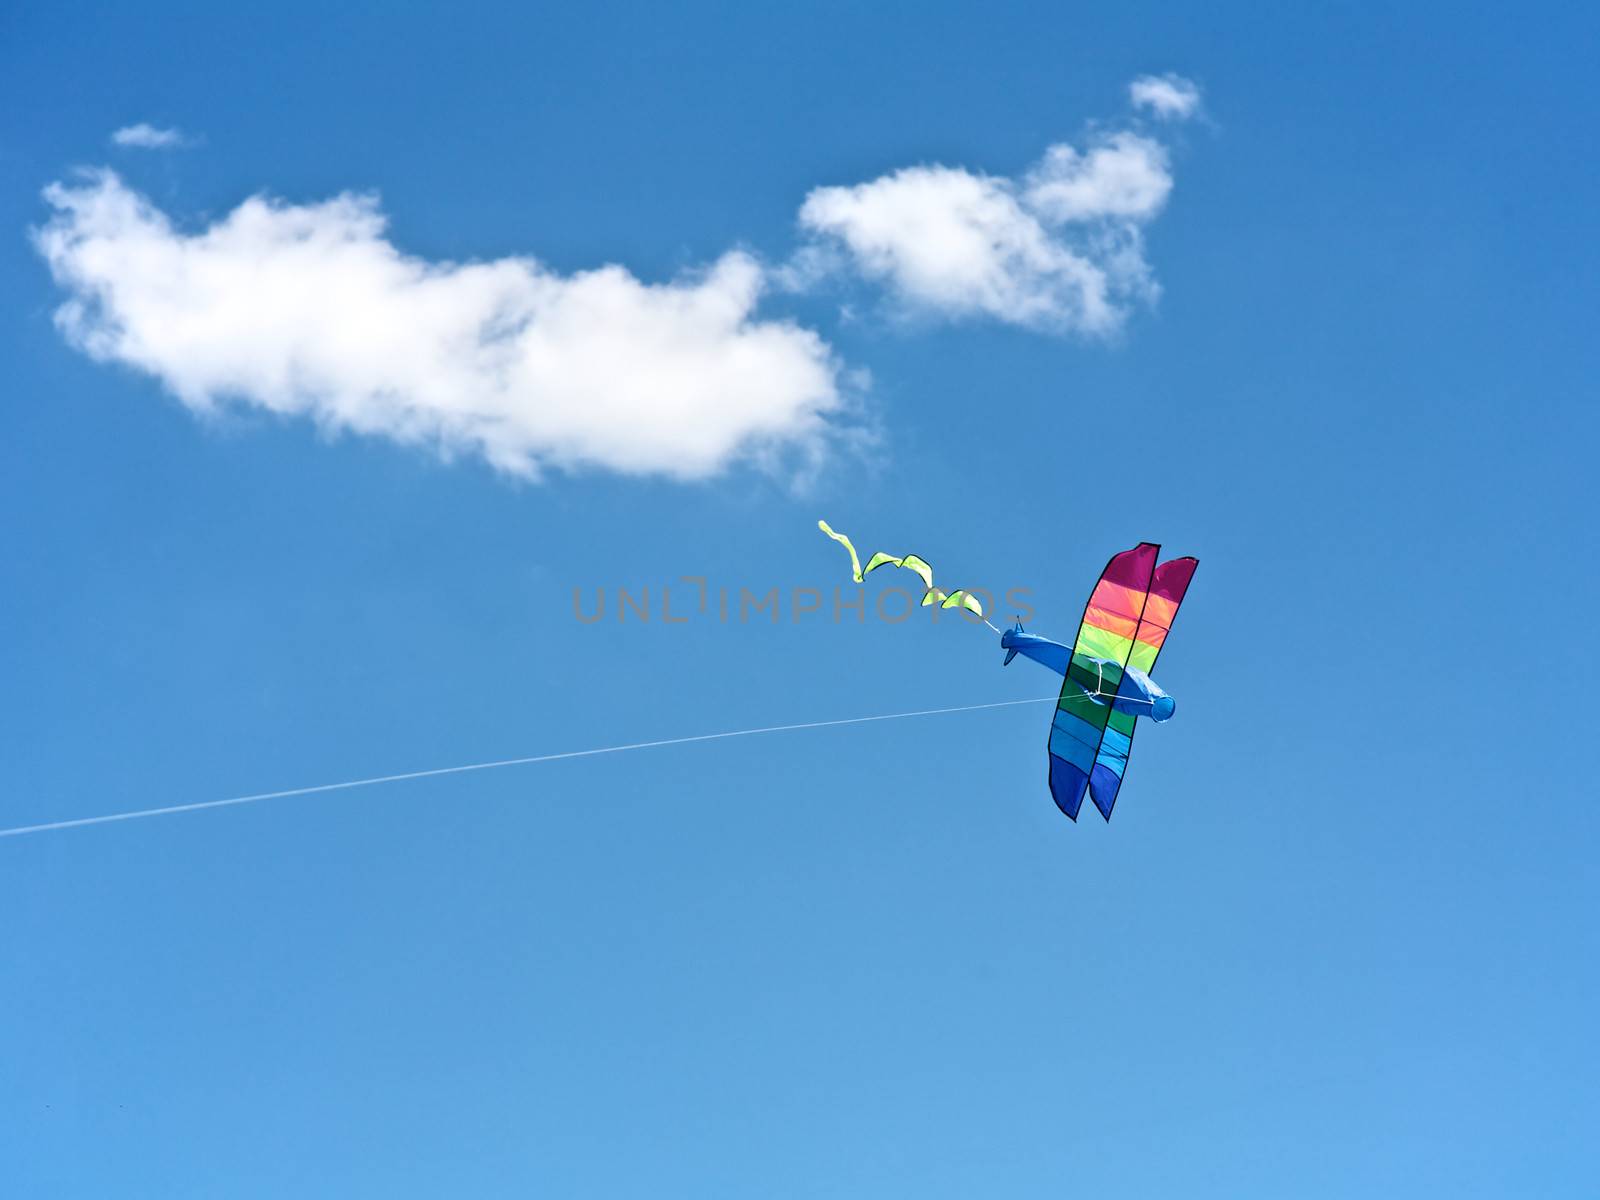 Kite Flying in the sky, fun for children